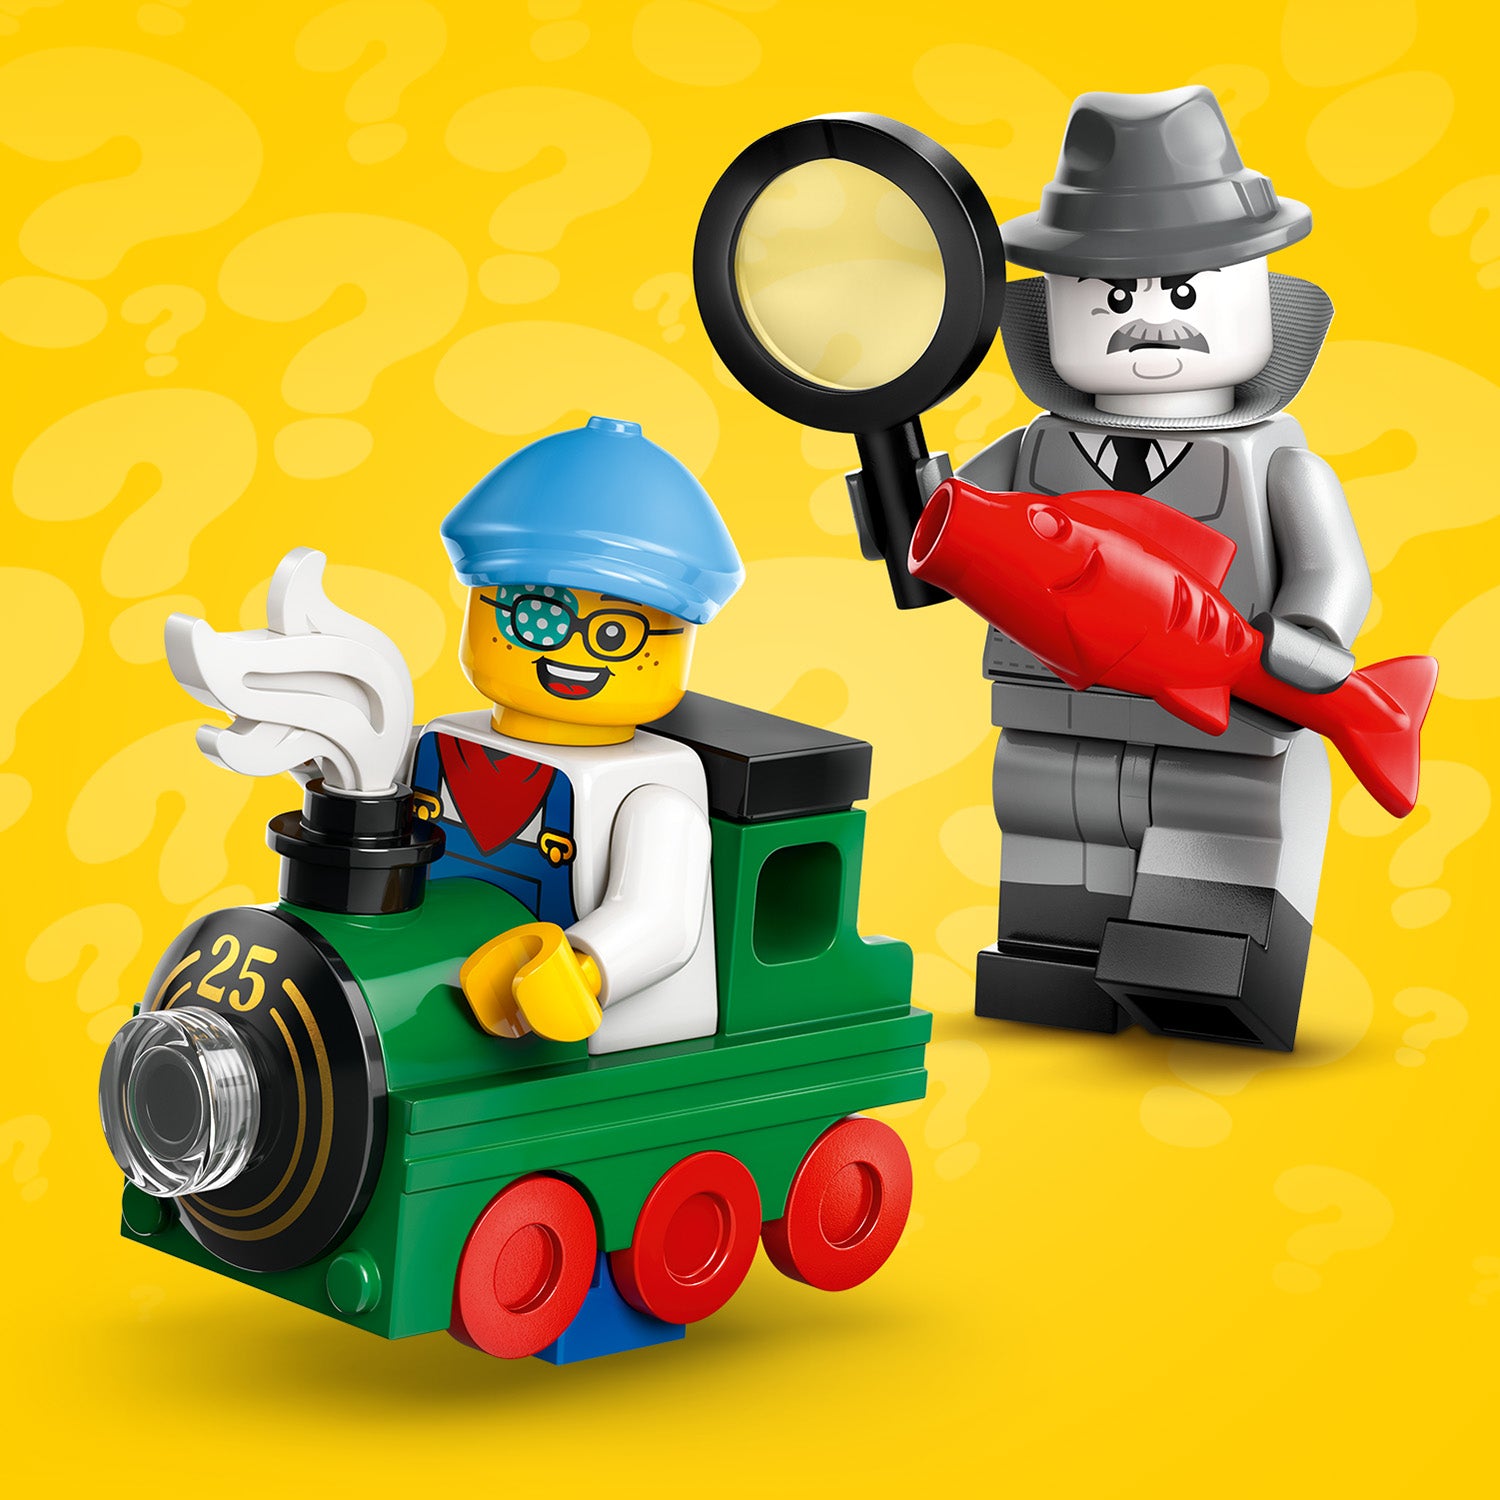 Lego 71045 LEGO Minifigures Series 25